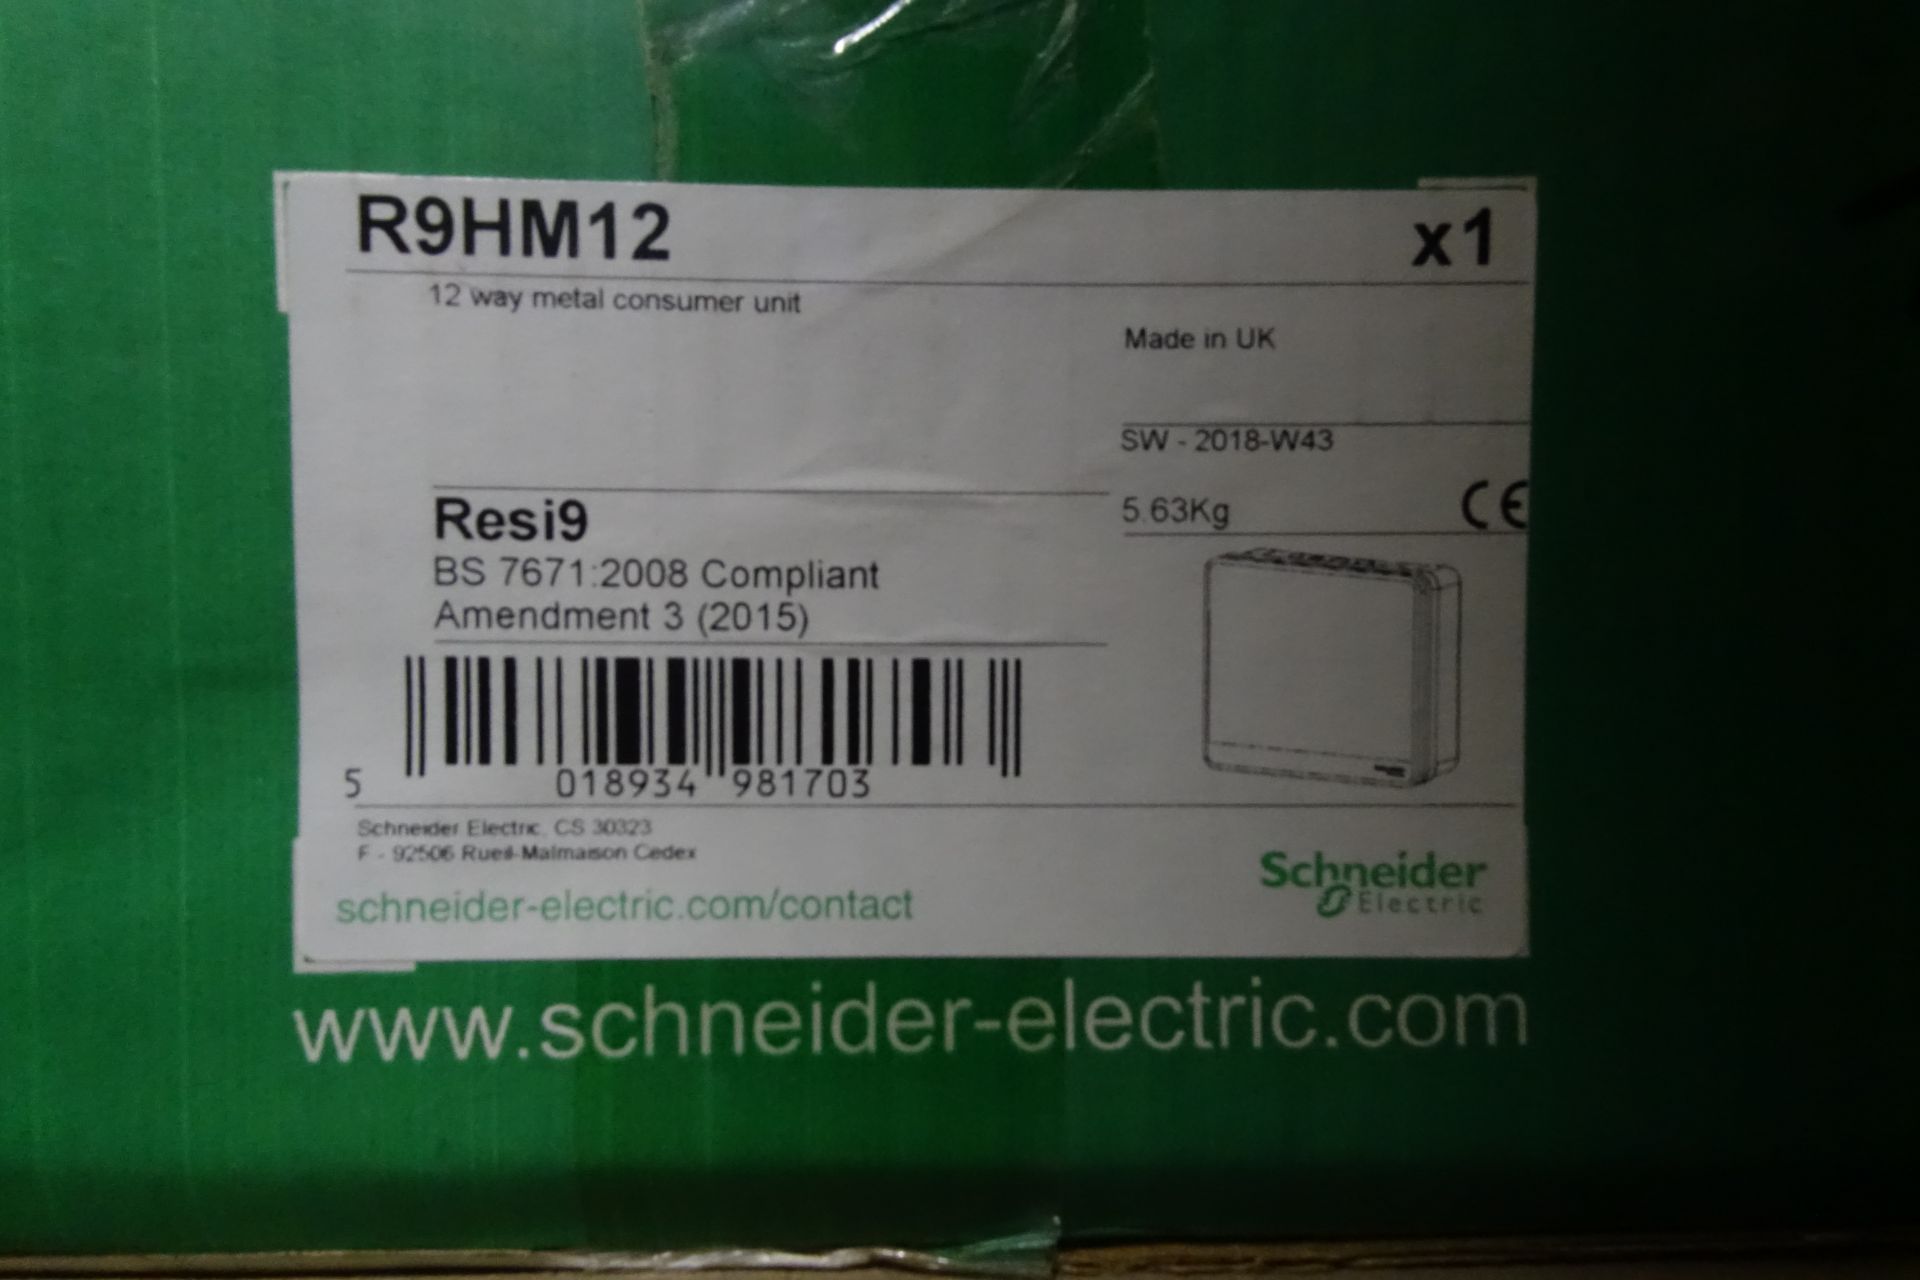 6 x SCHNEIDER R9HM12 12 Way Metal Consumer Unit's